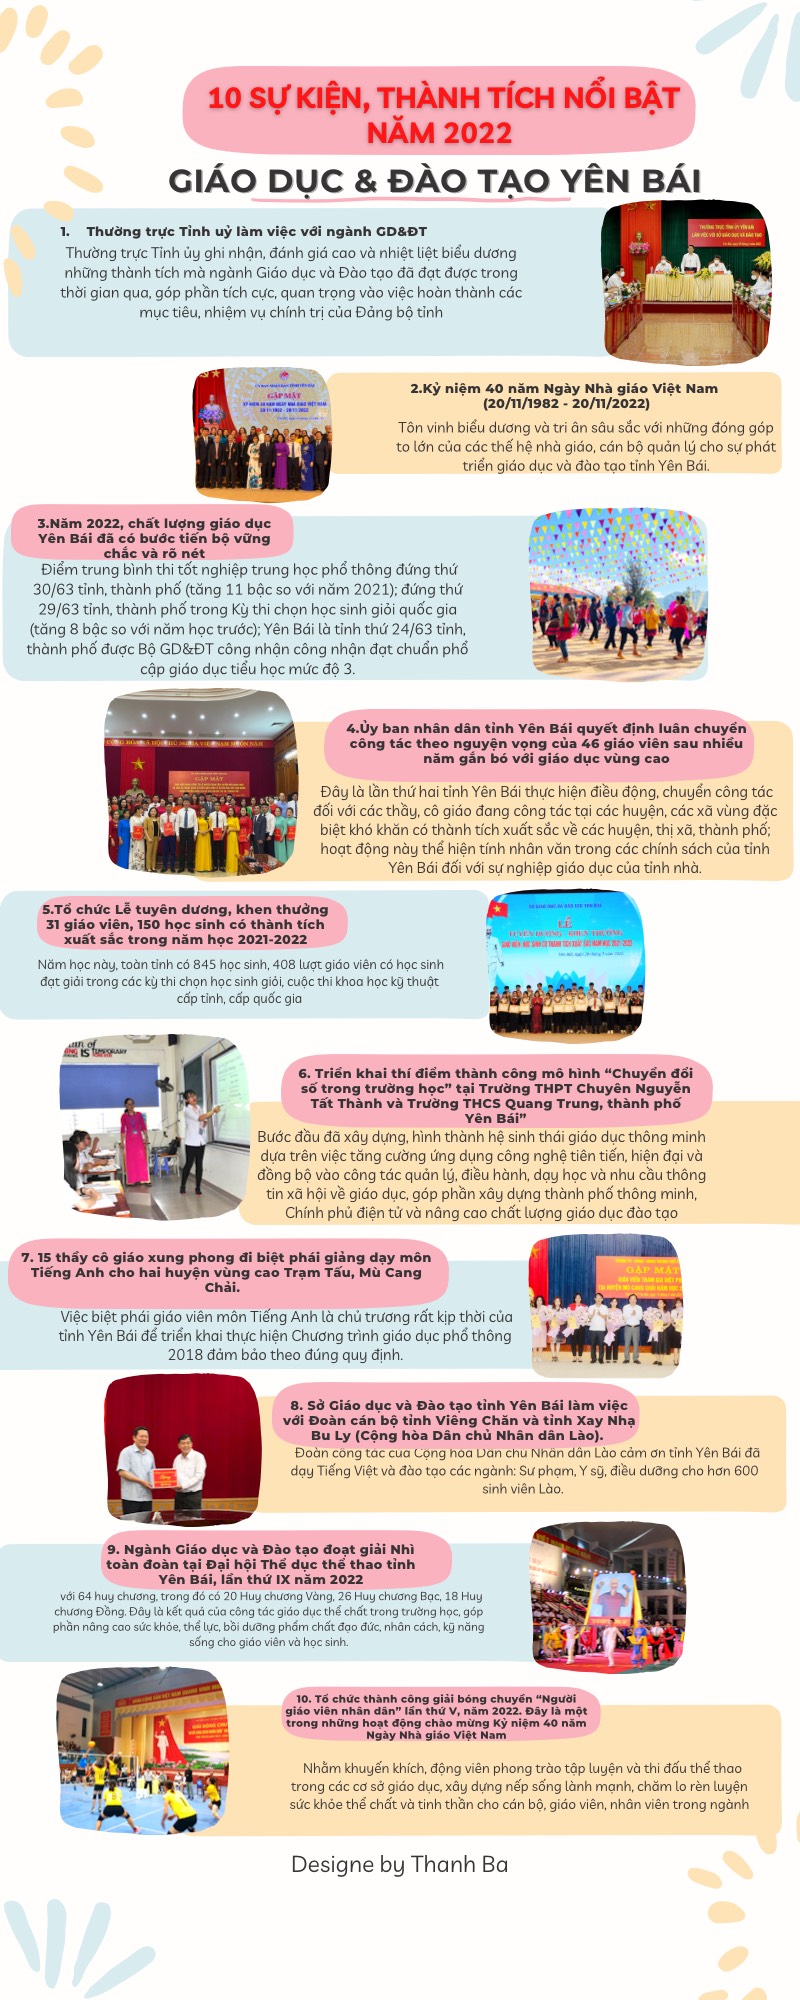 [Inforgraphic] 10 sự kiện, thành tích tiêu biểu năm 2022 của ngành giáo dục và đào tạo Yên Bái